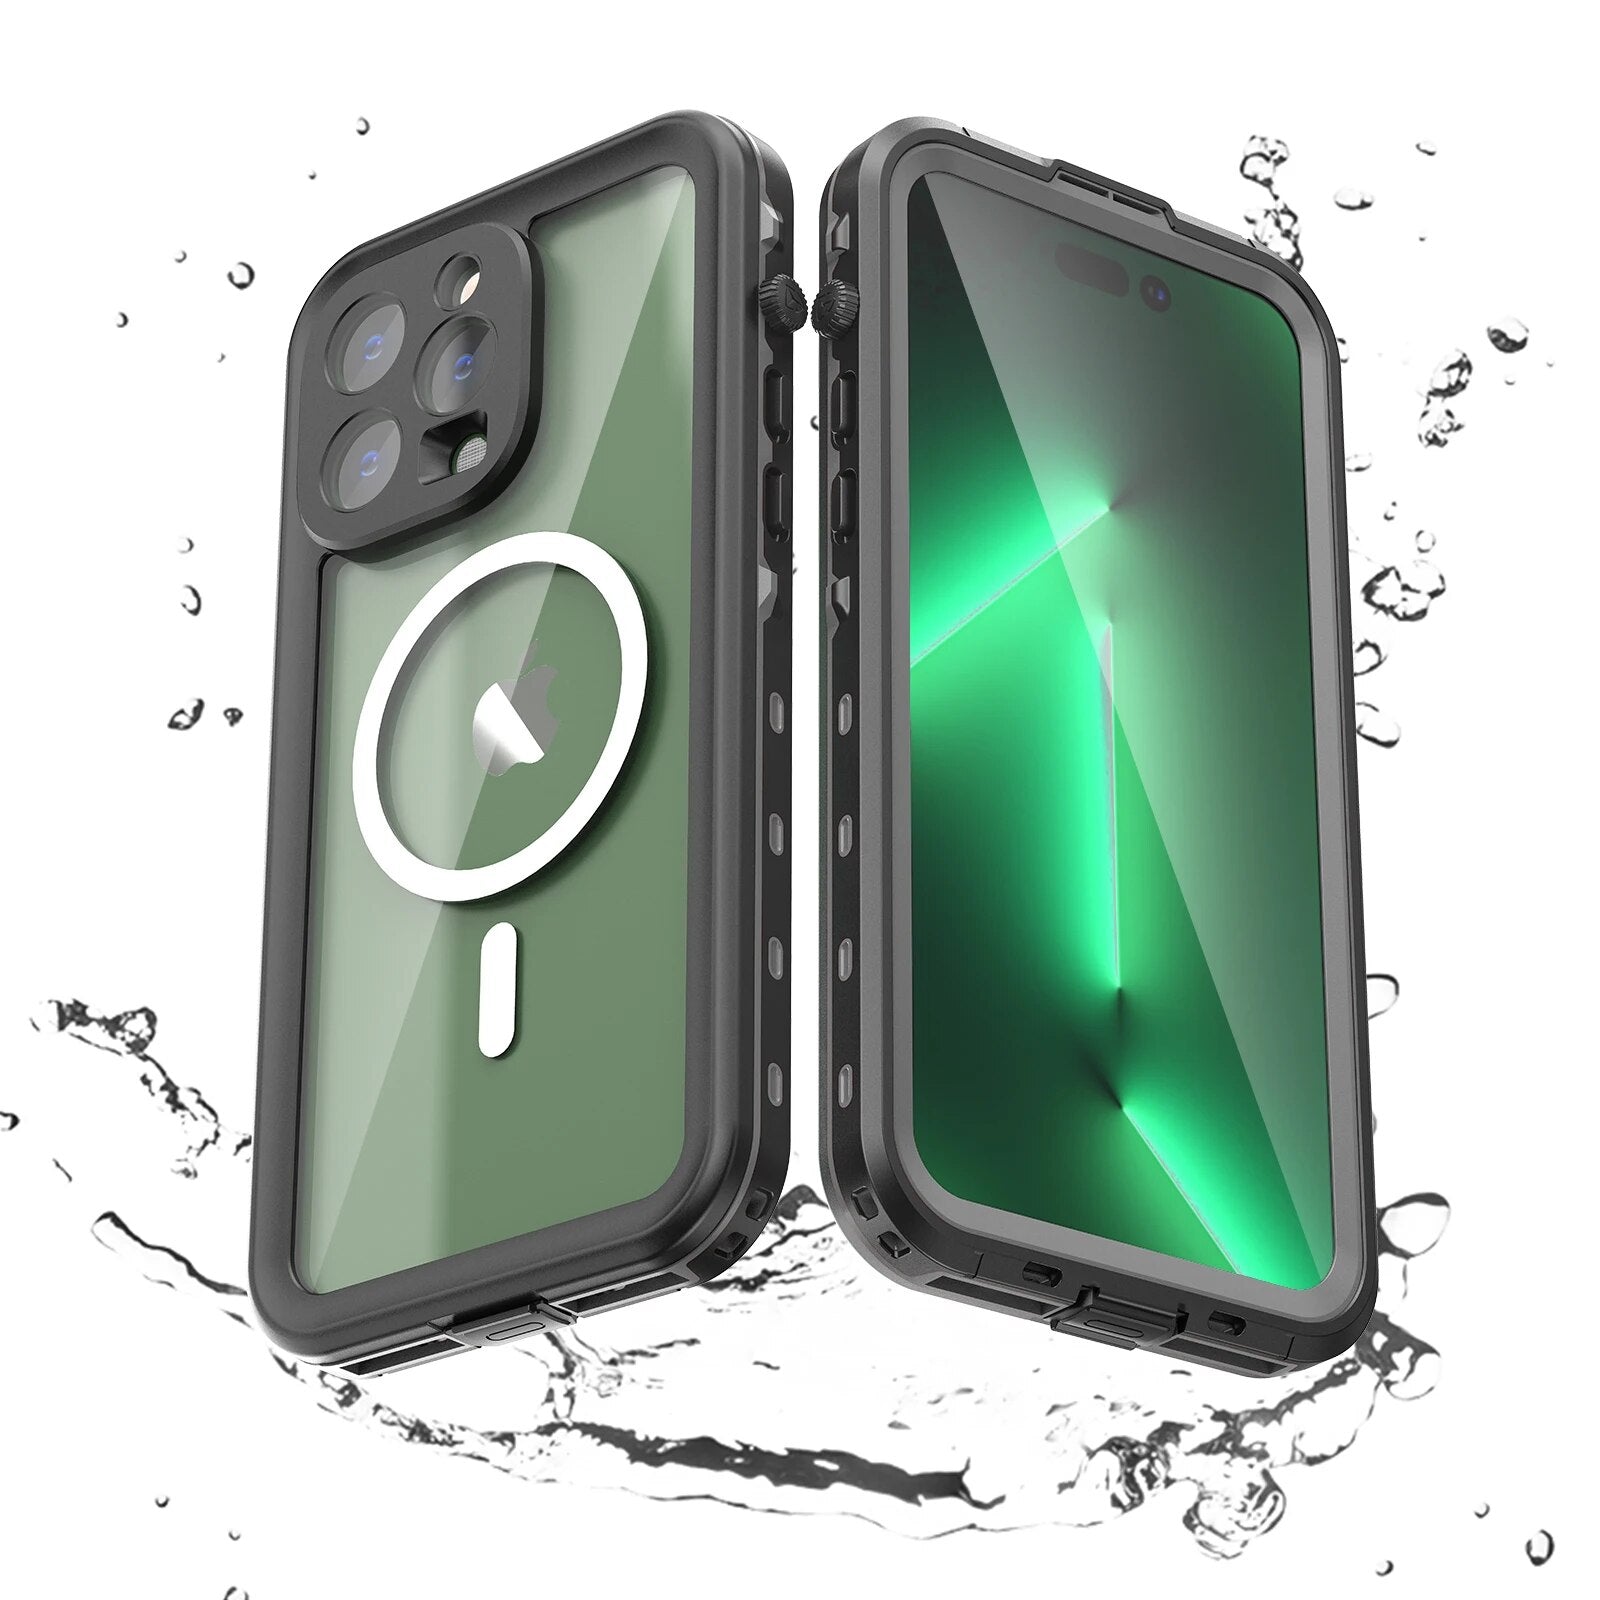 Militärstandard Wasserdichte IP68 iPhone Hülle mit MagSafe: Für Tauchen & Outdoor-Sport | Stoßfest & Langlebig - Phone Heaven Zone